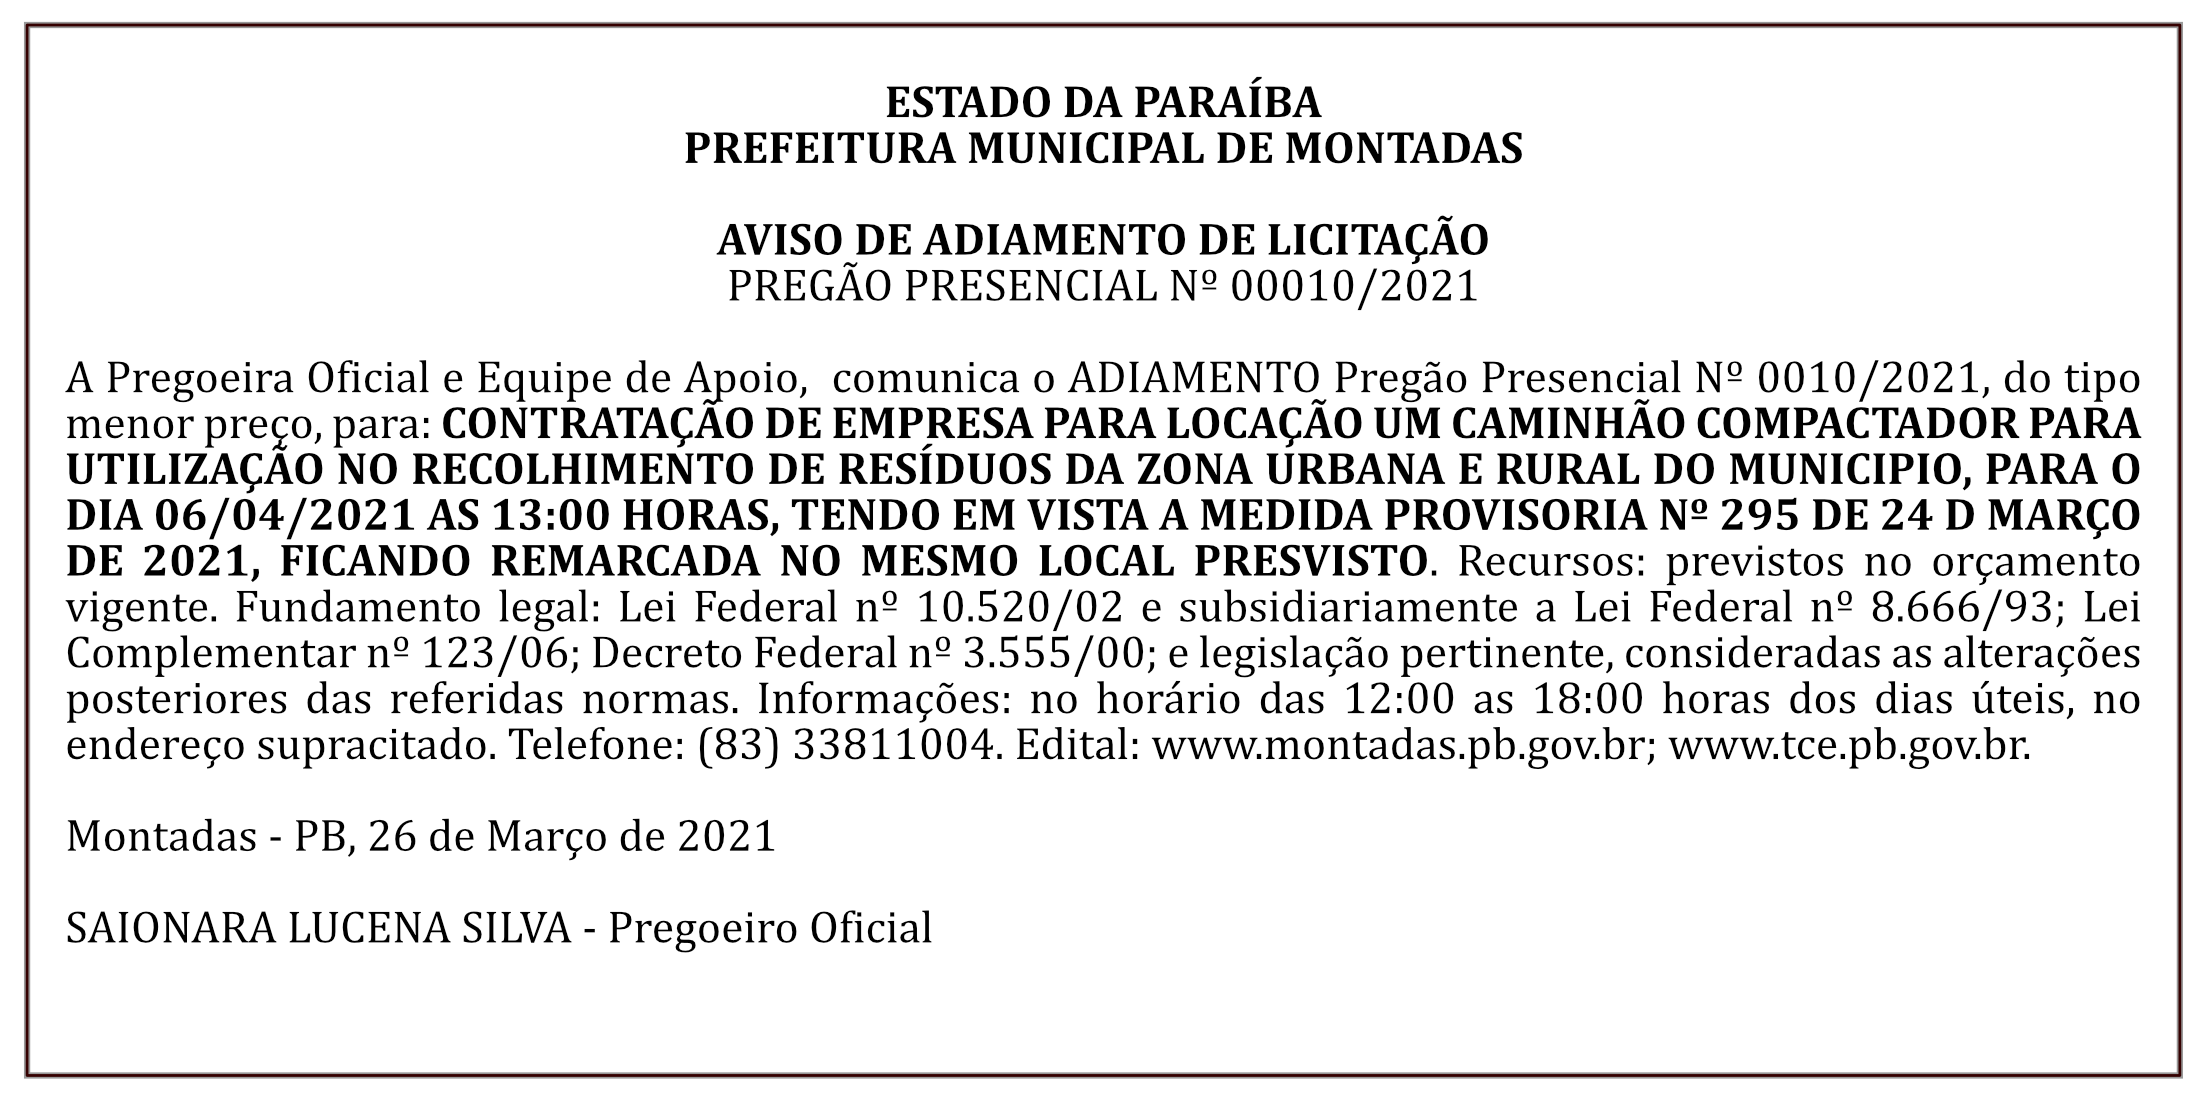 PREFEITURA MUNICIPAL DE MONTADAS – AVISO DE ADIAMENTO DE LICITAÇÃO – PREGÃO PRESENCIAL Nº 00010/2021